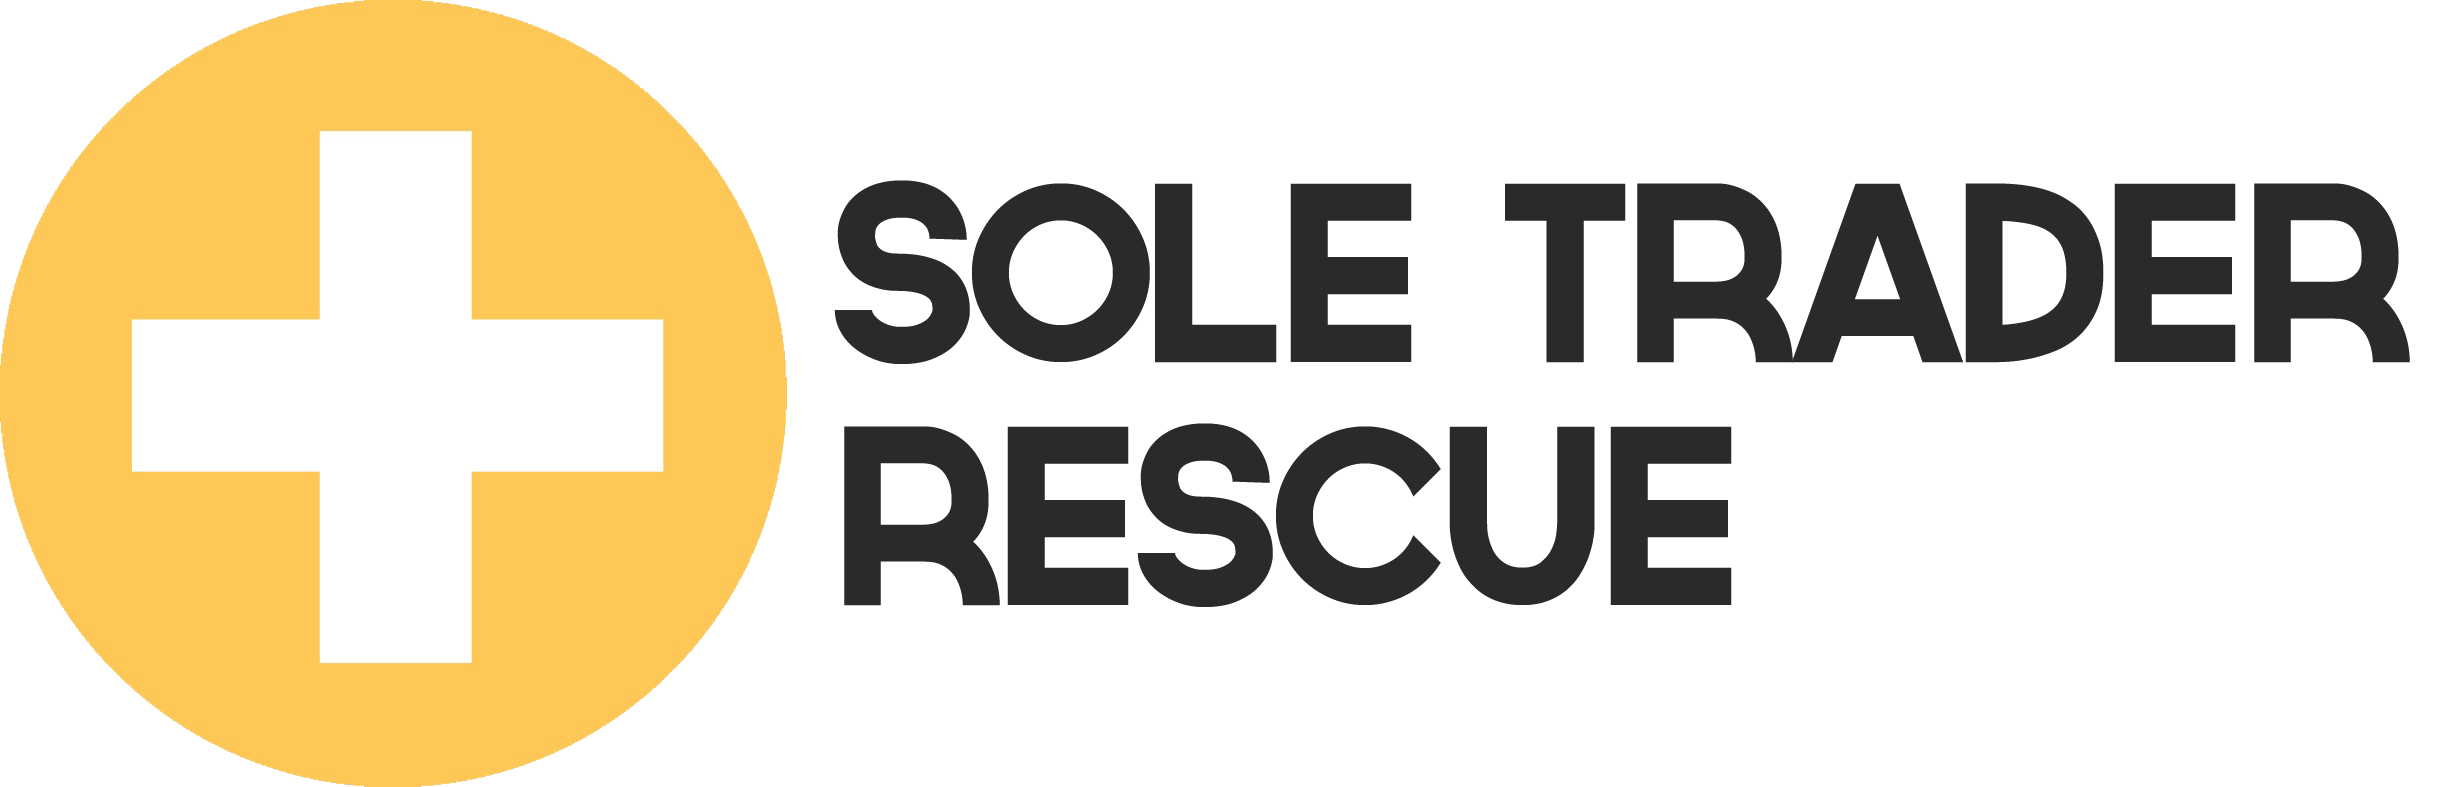 Sole Trader Rescue